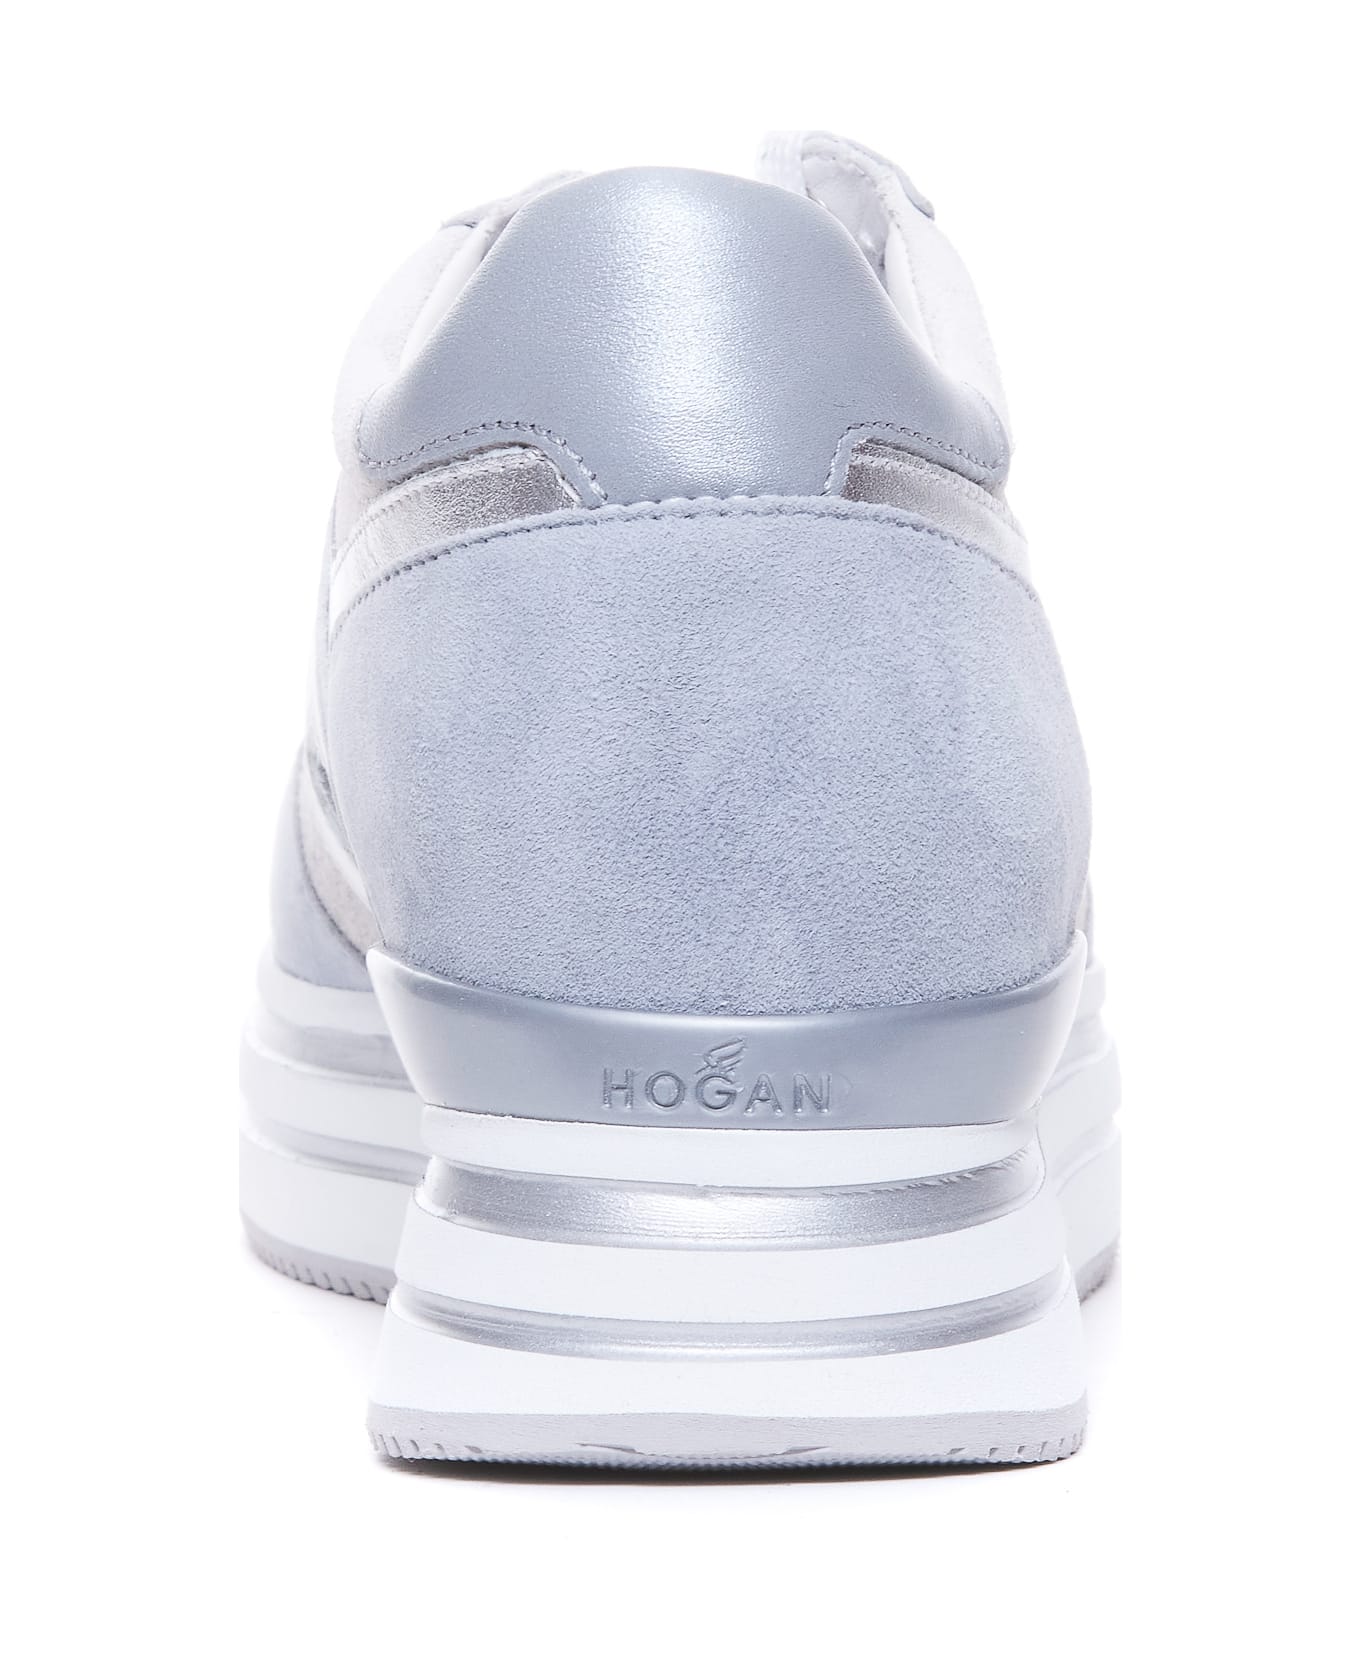 Hogan Midi H222 Sneakers - Grey スニーカー